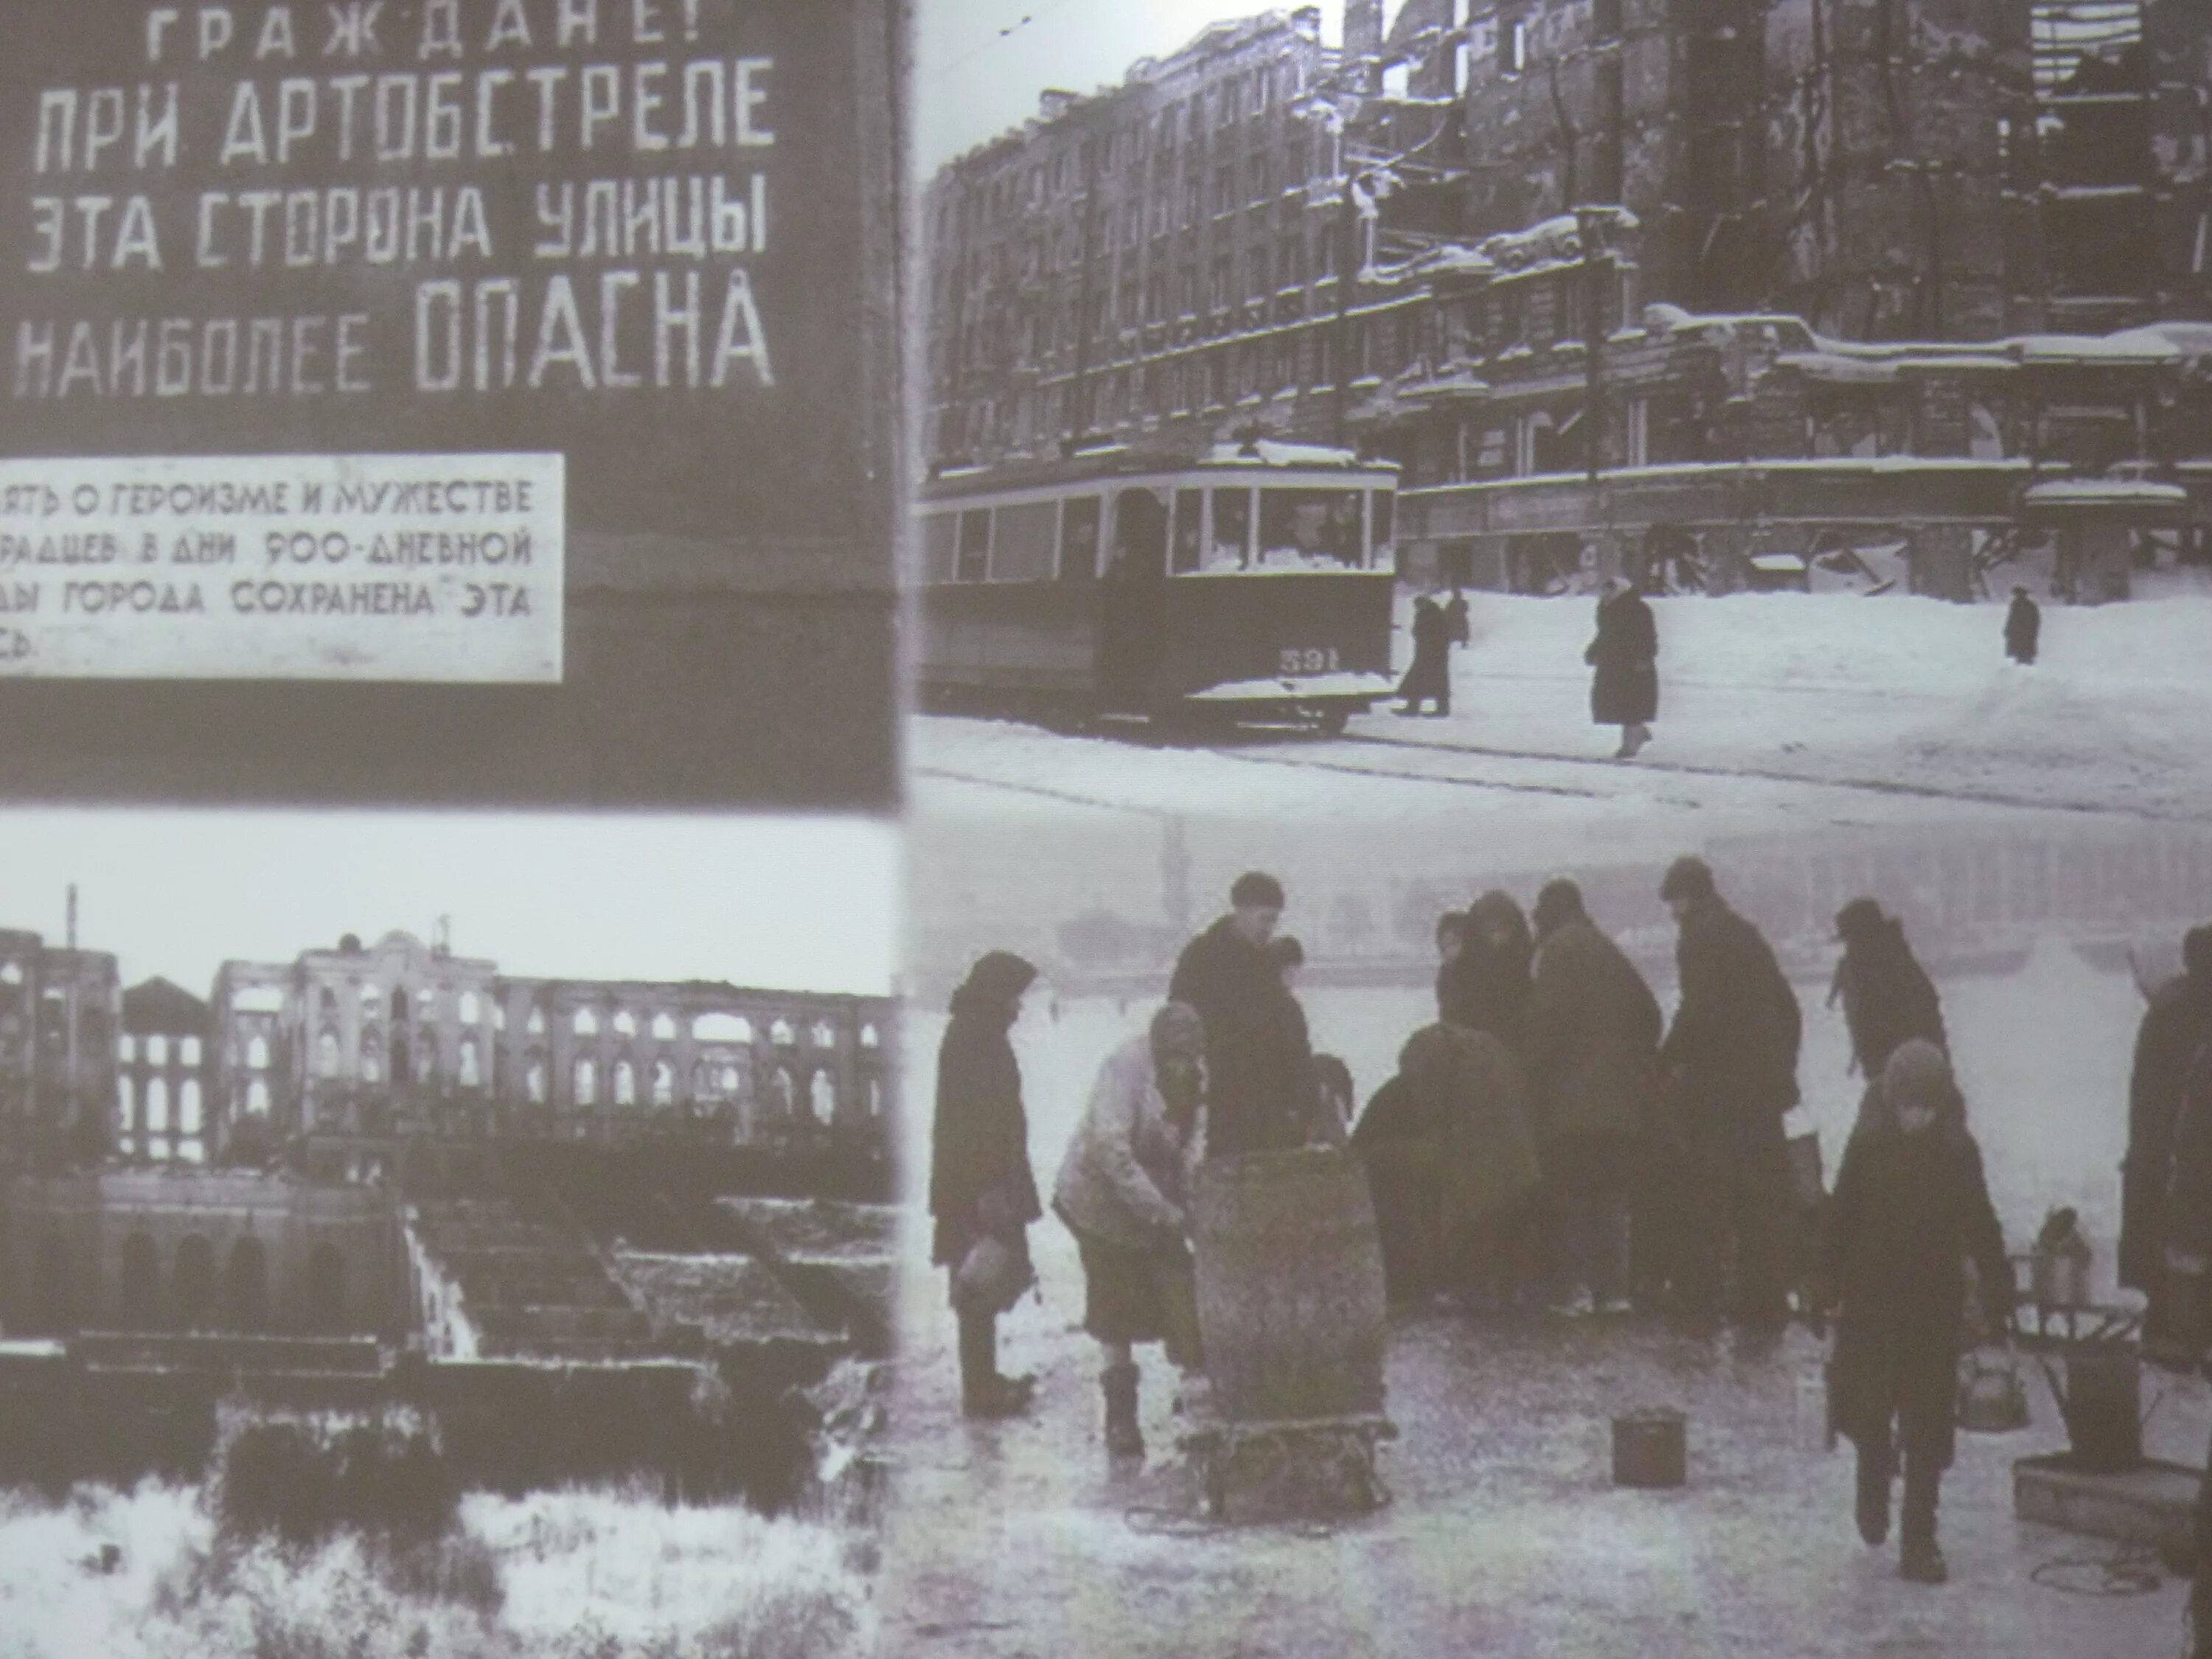 Освобождение ленинграда от фашистской блокады конспект